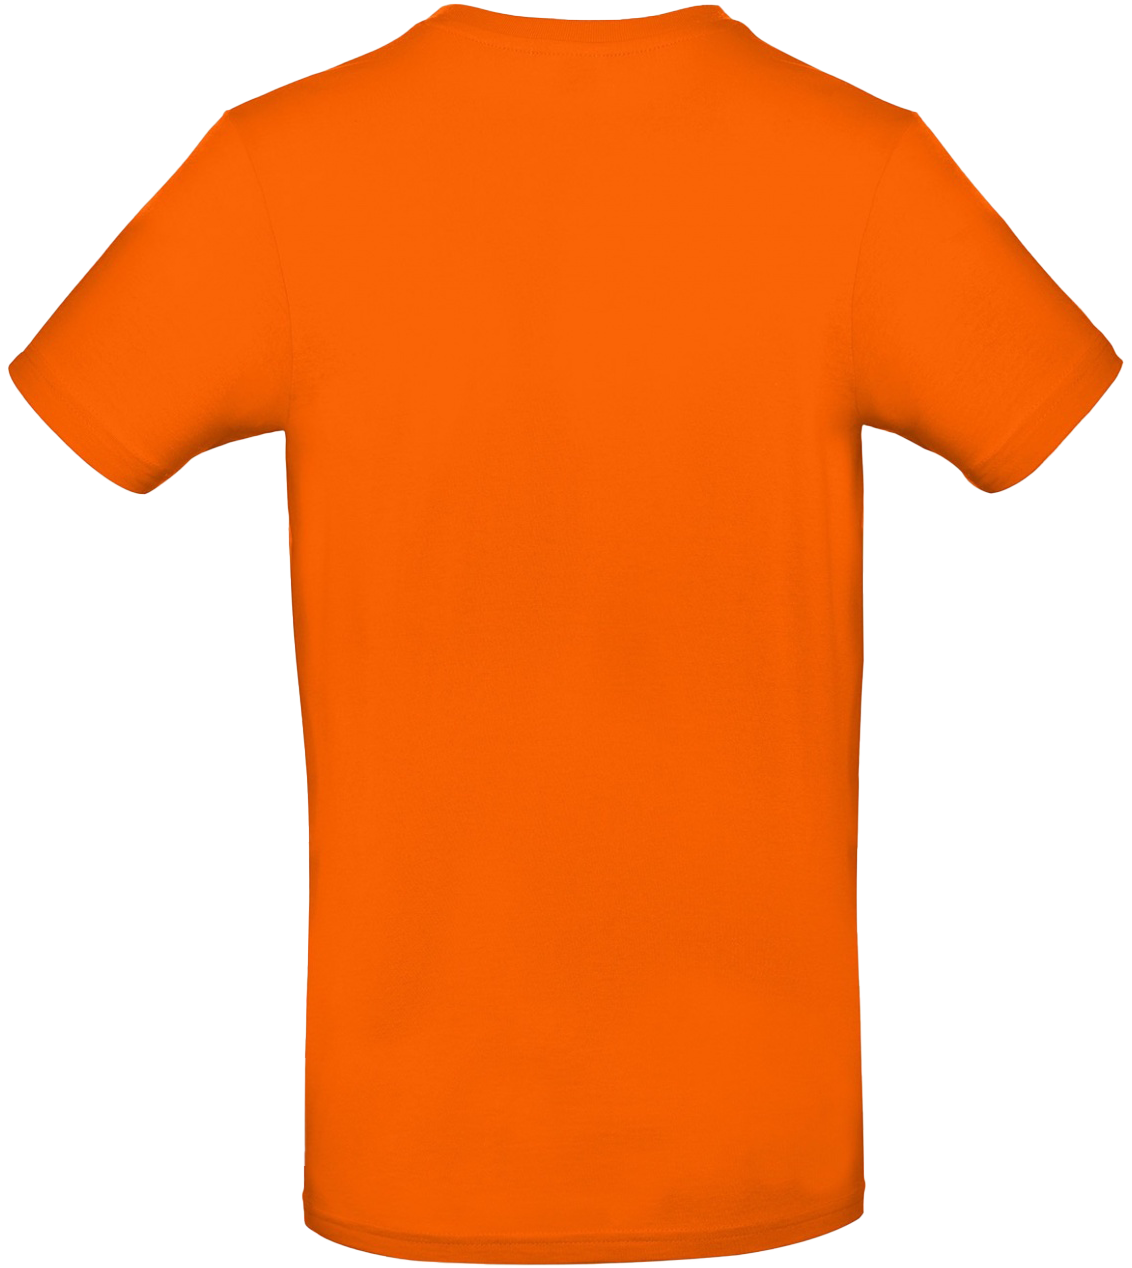 T-shirt E#190 Orange 48